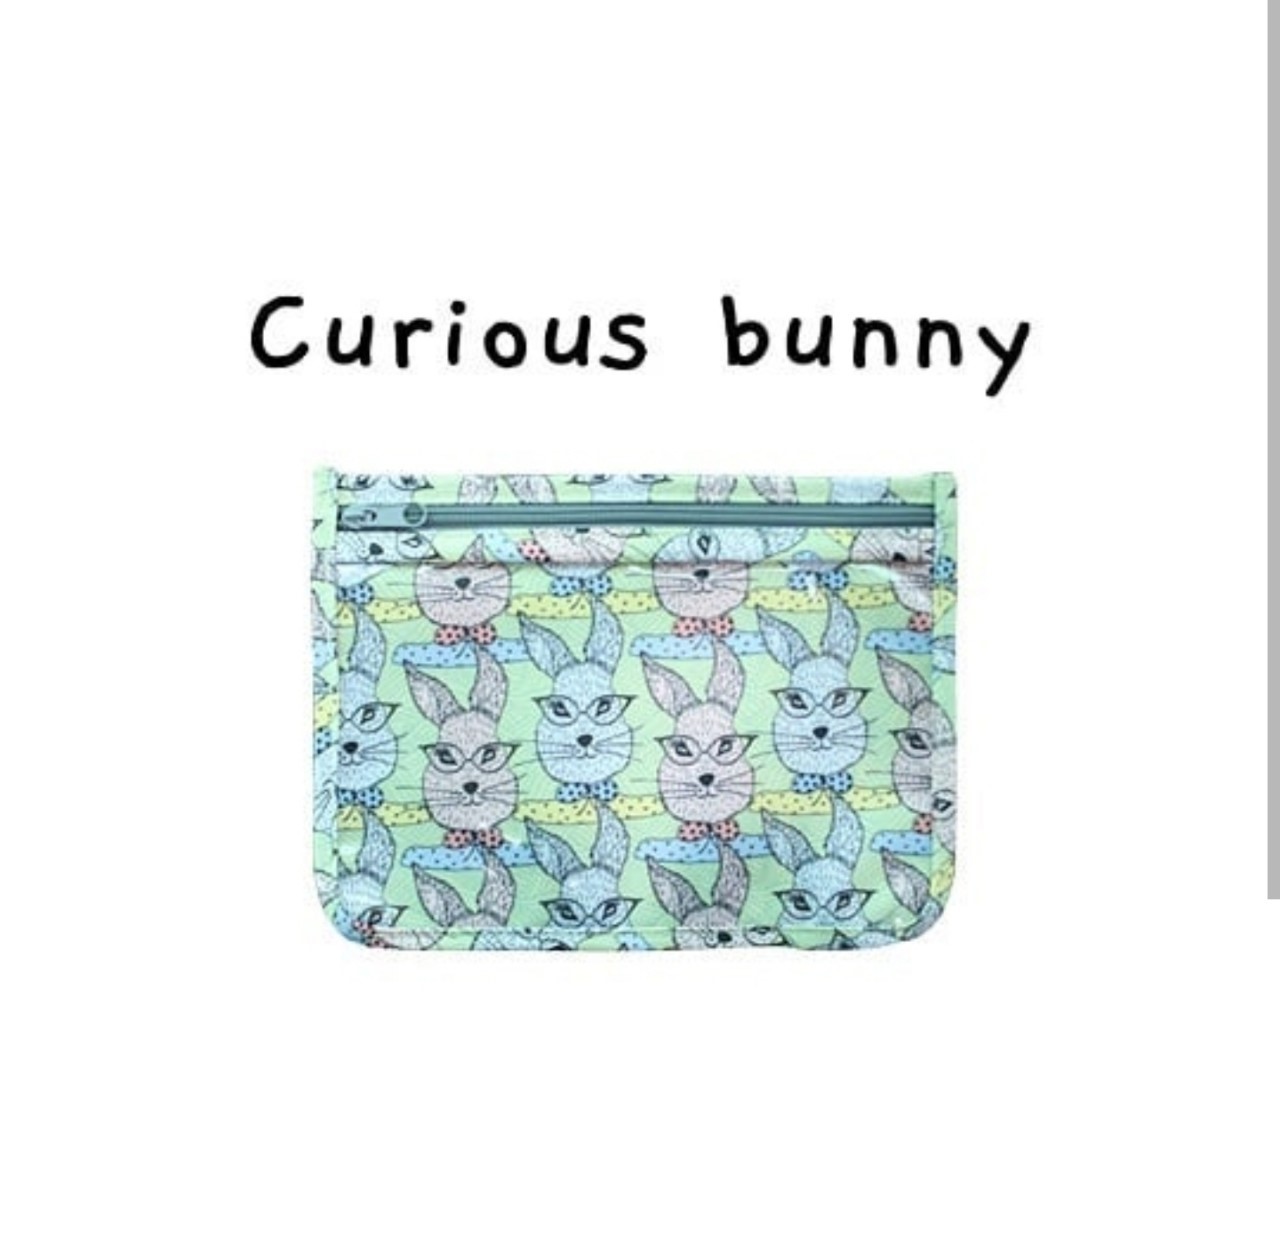 Daily Buddy Bag/Curious Bunny